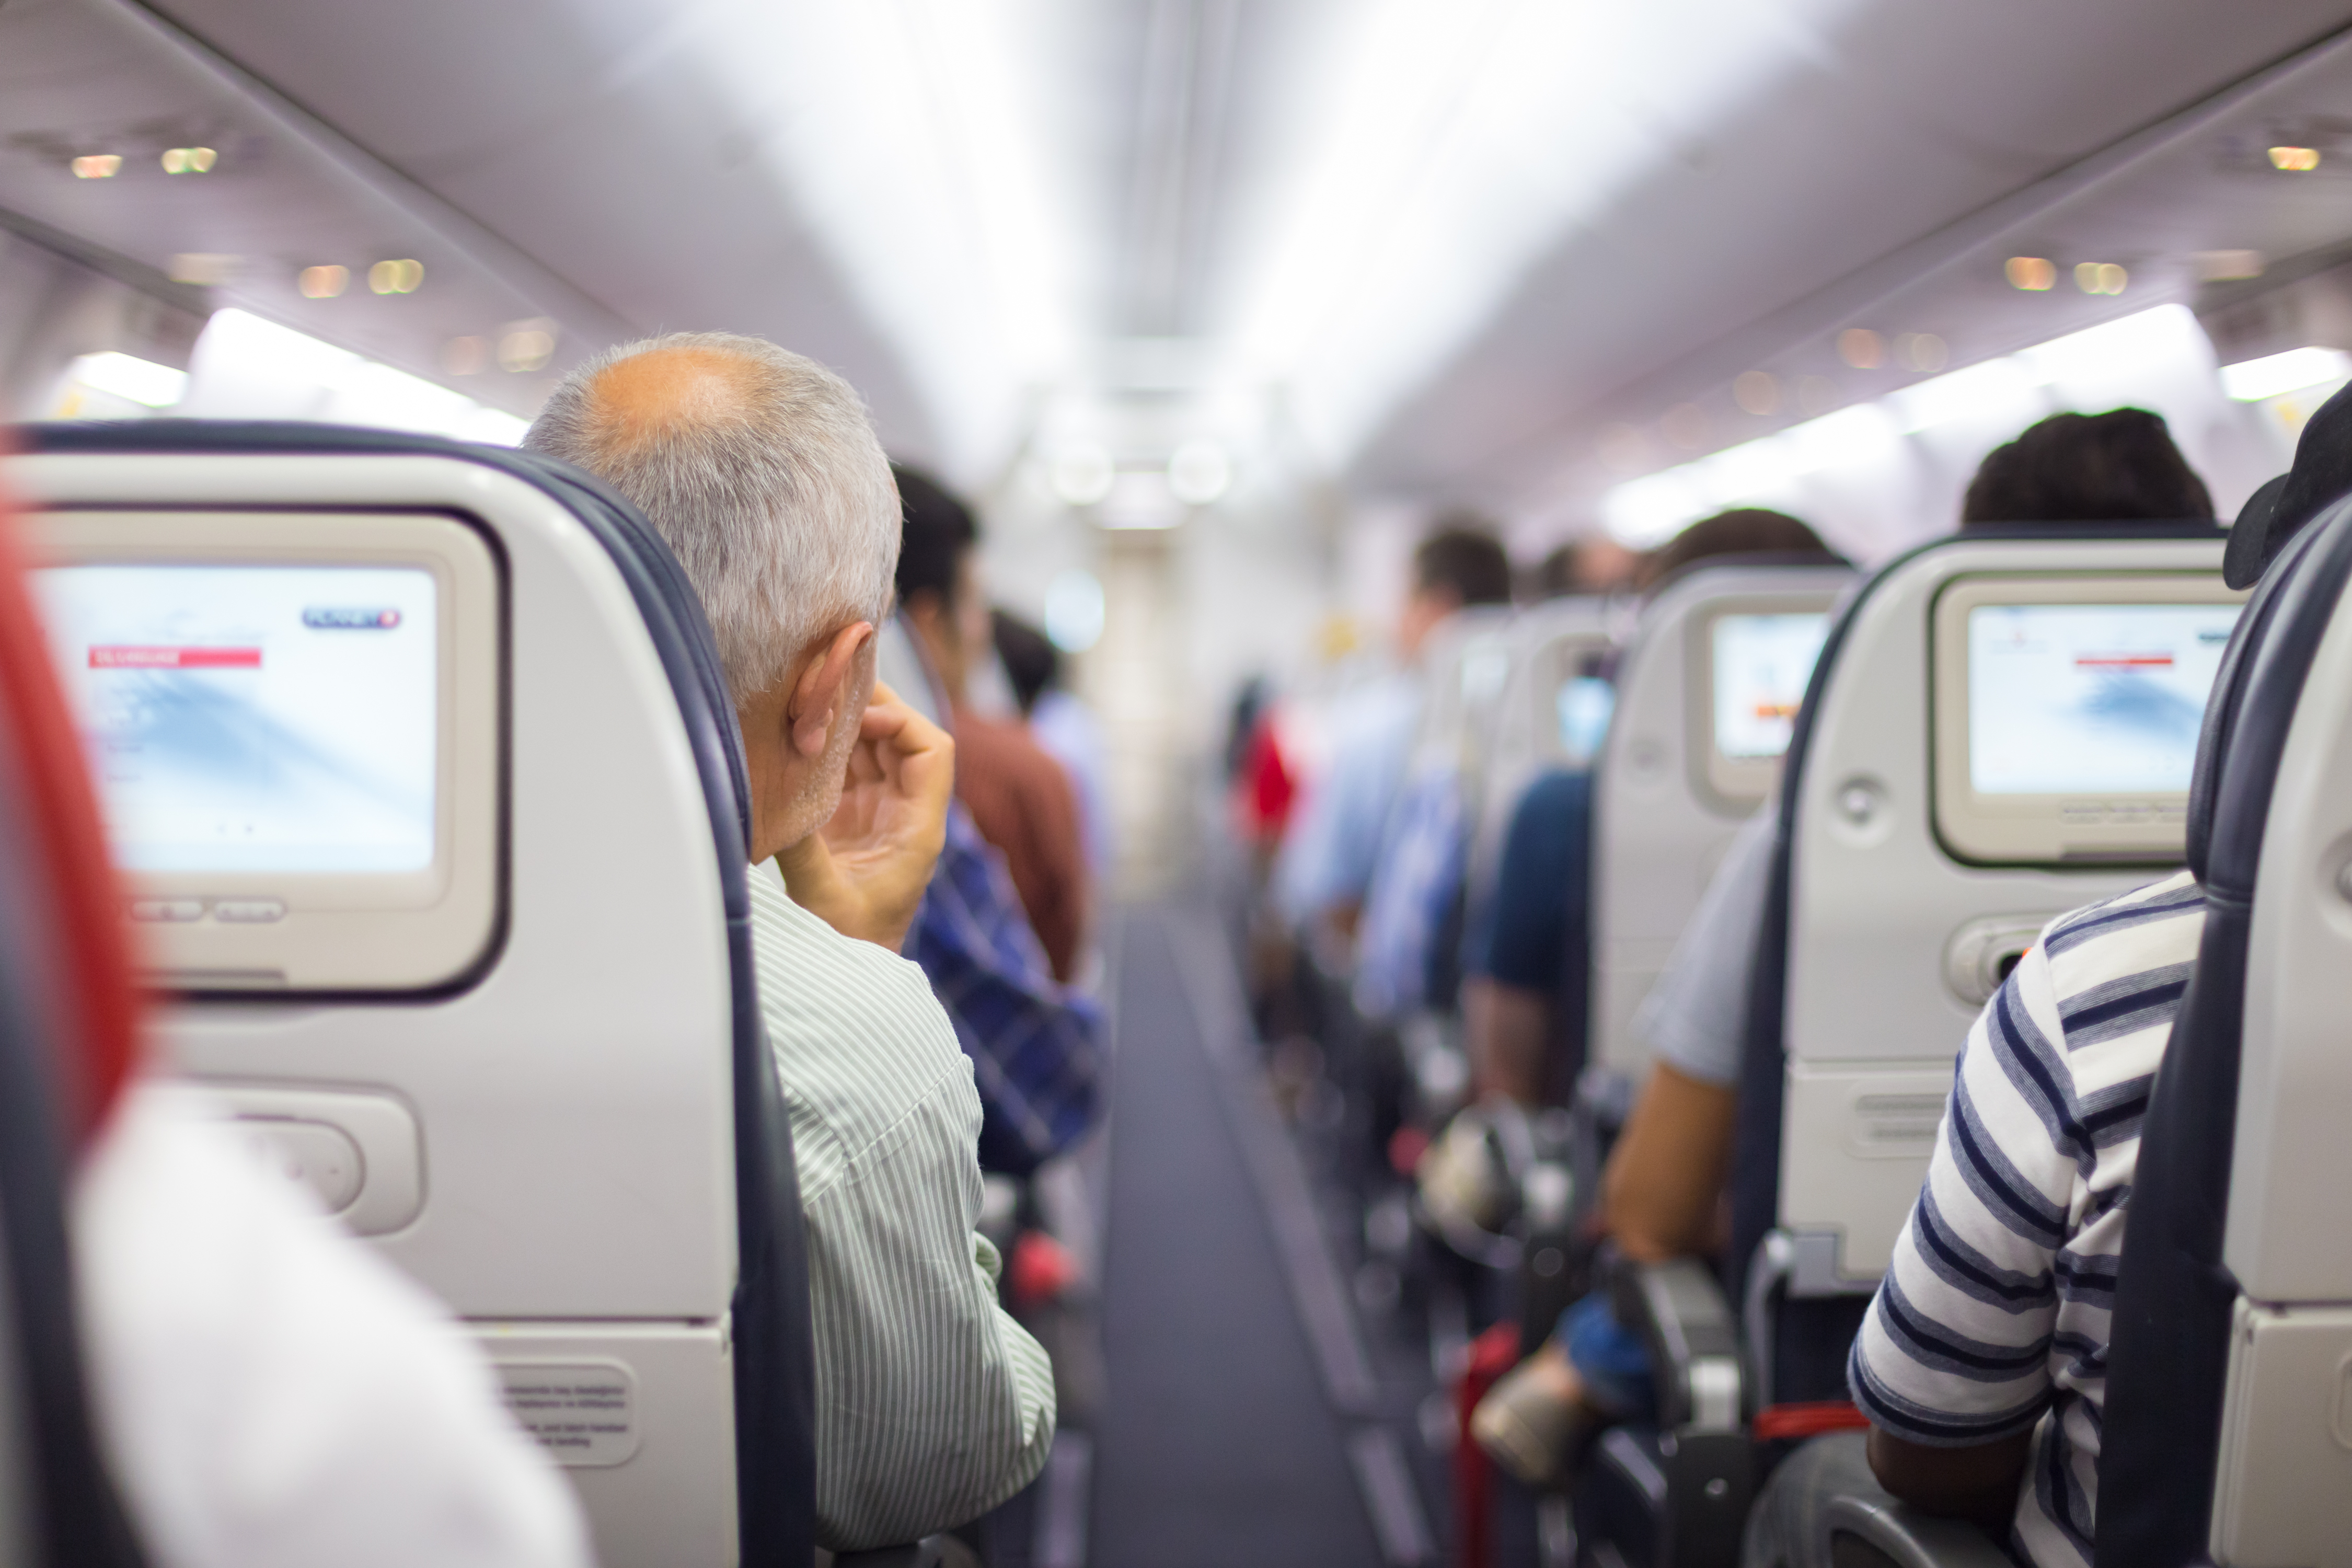 Passagers dans un avion | Source : Shutterstock